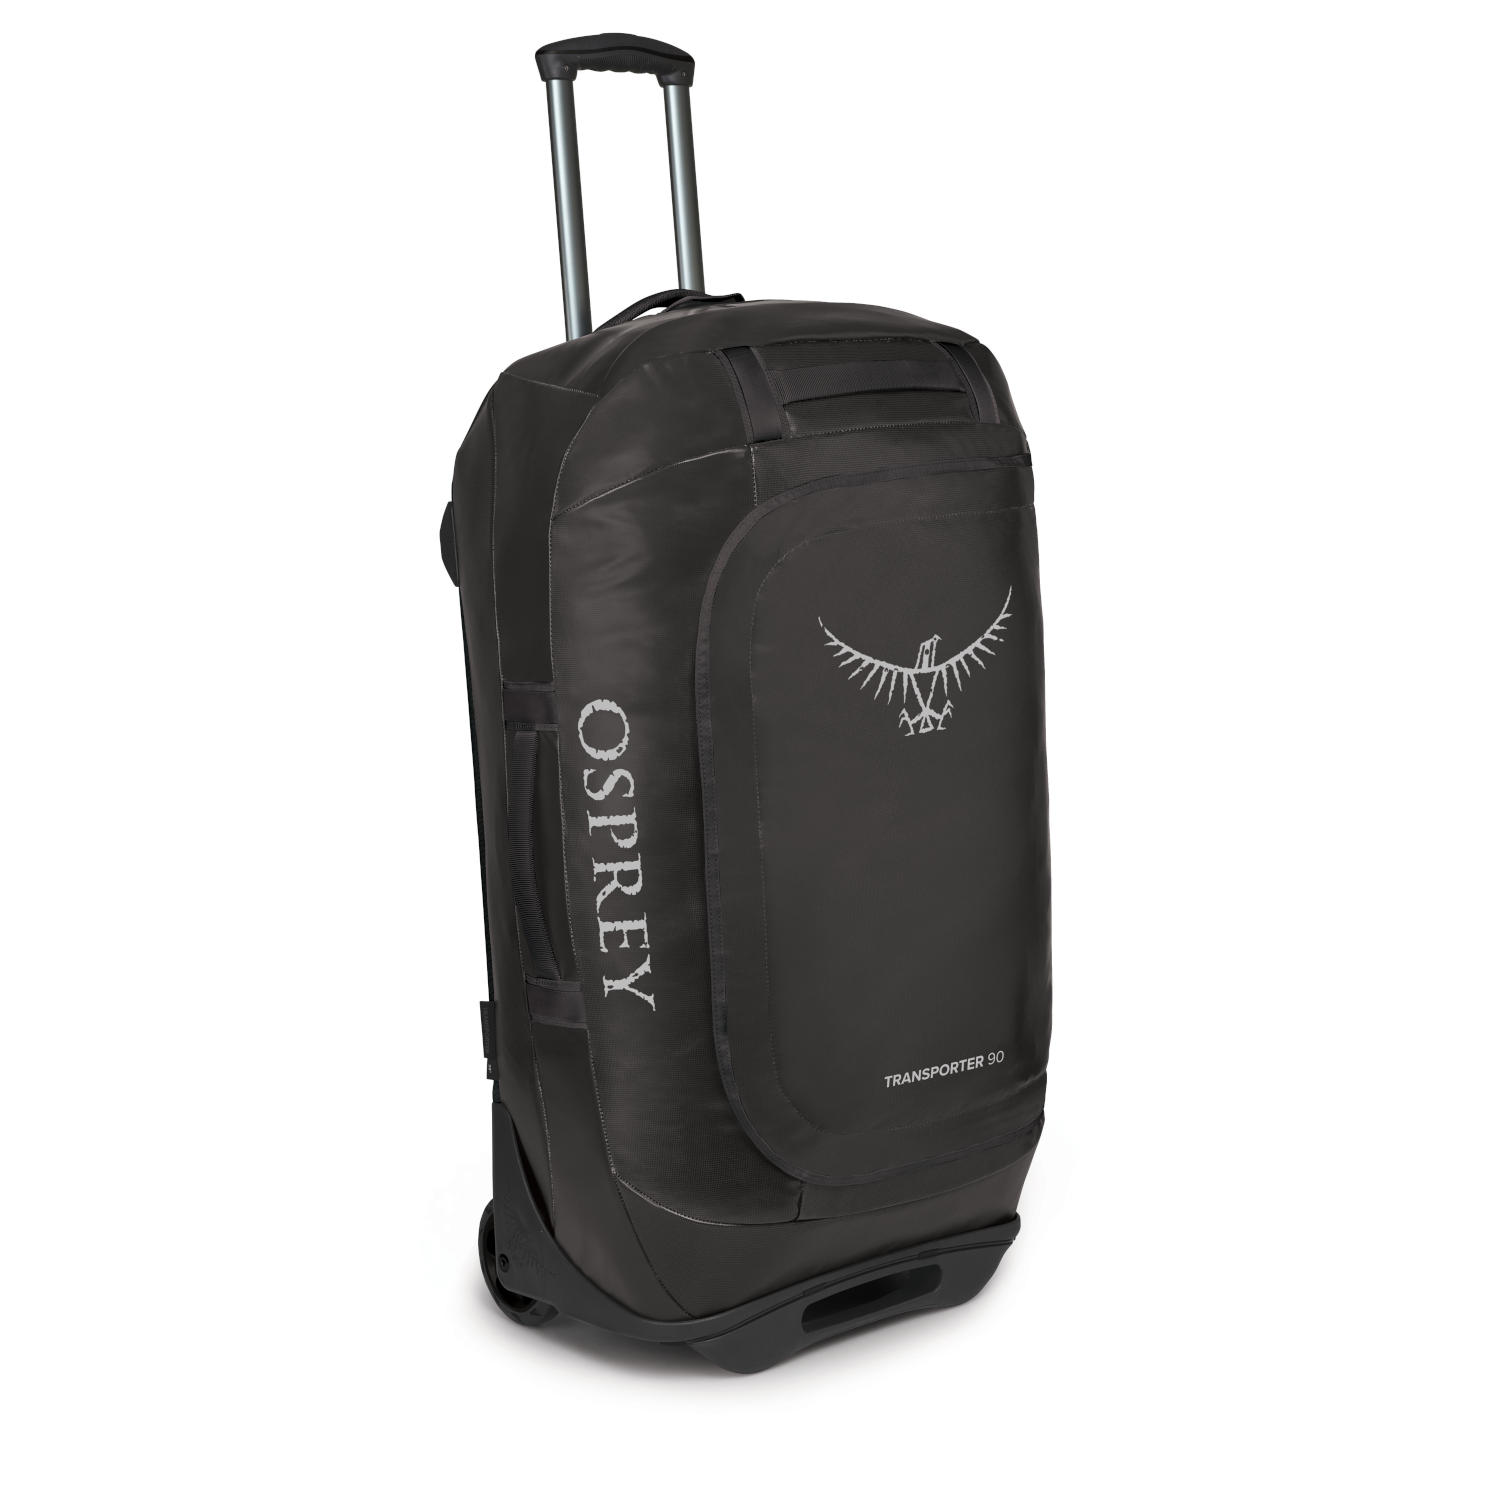 Produktbild von Osprey Rolling Transporter 90 Reisetasche - Black